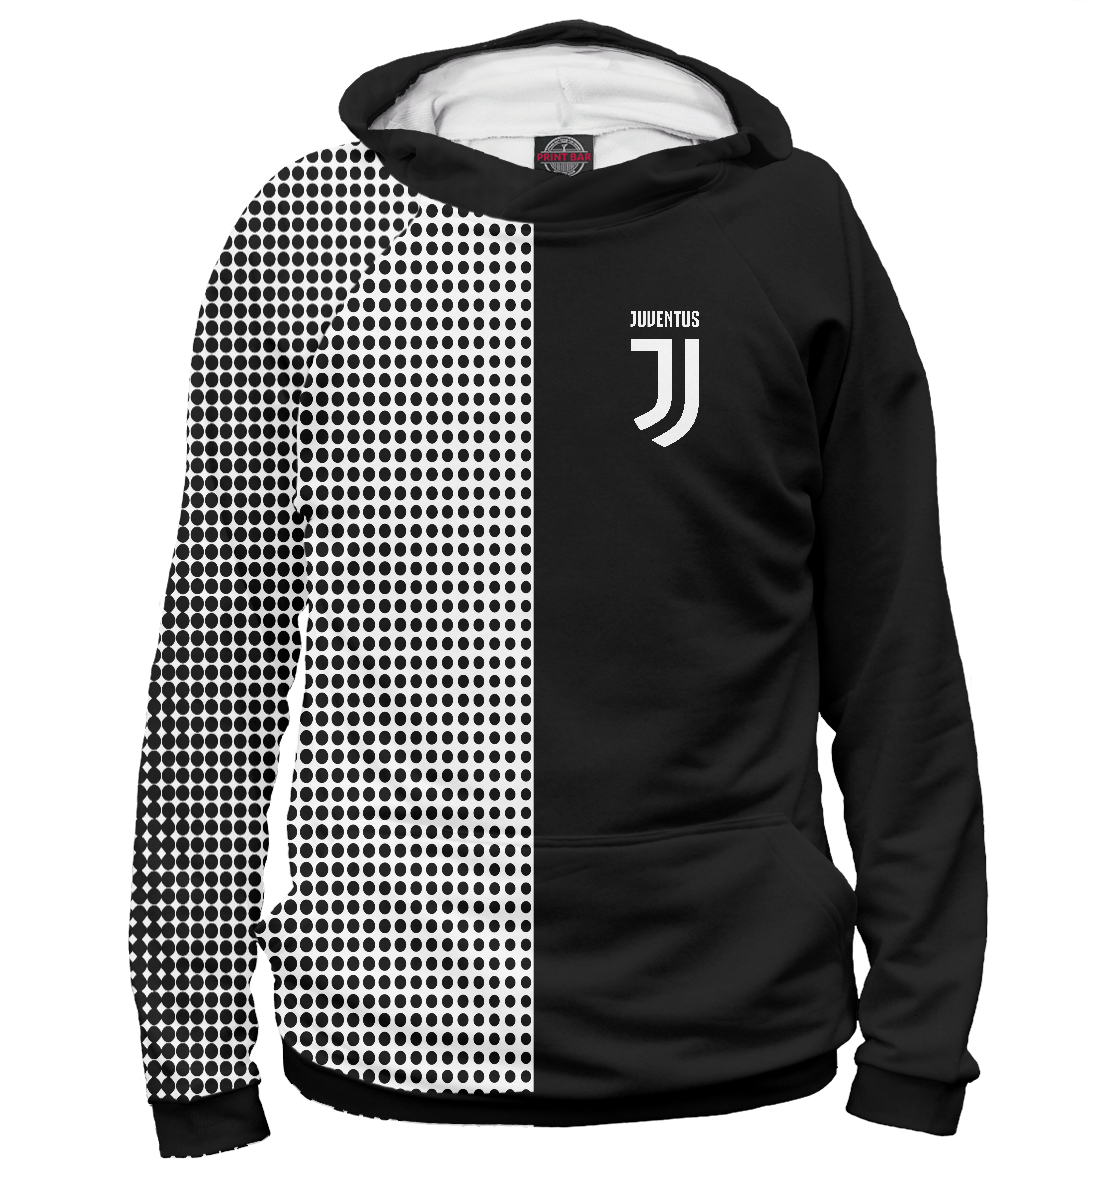 

Juventus